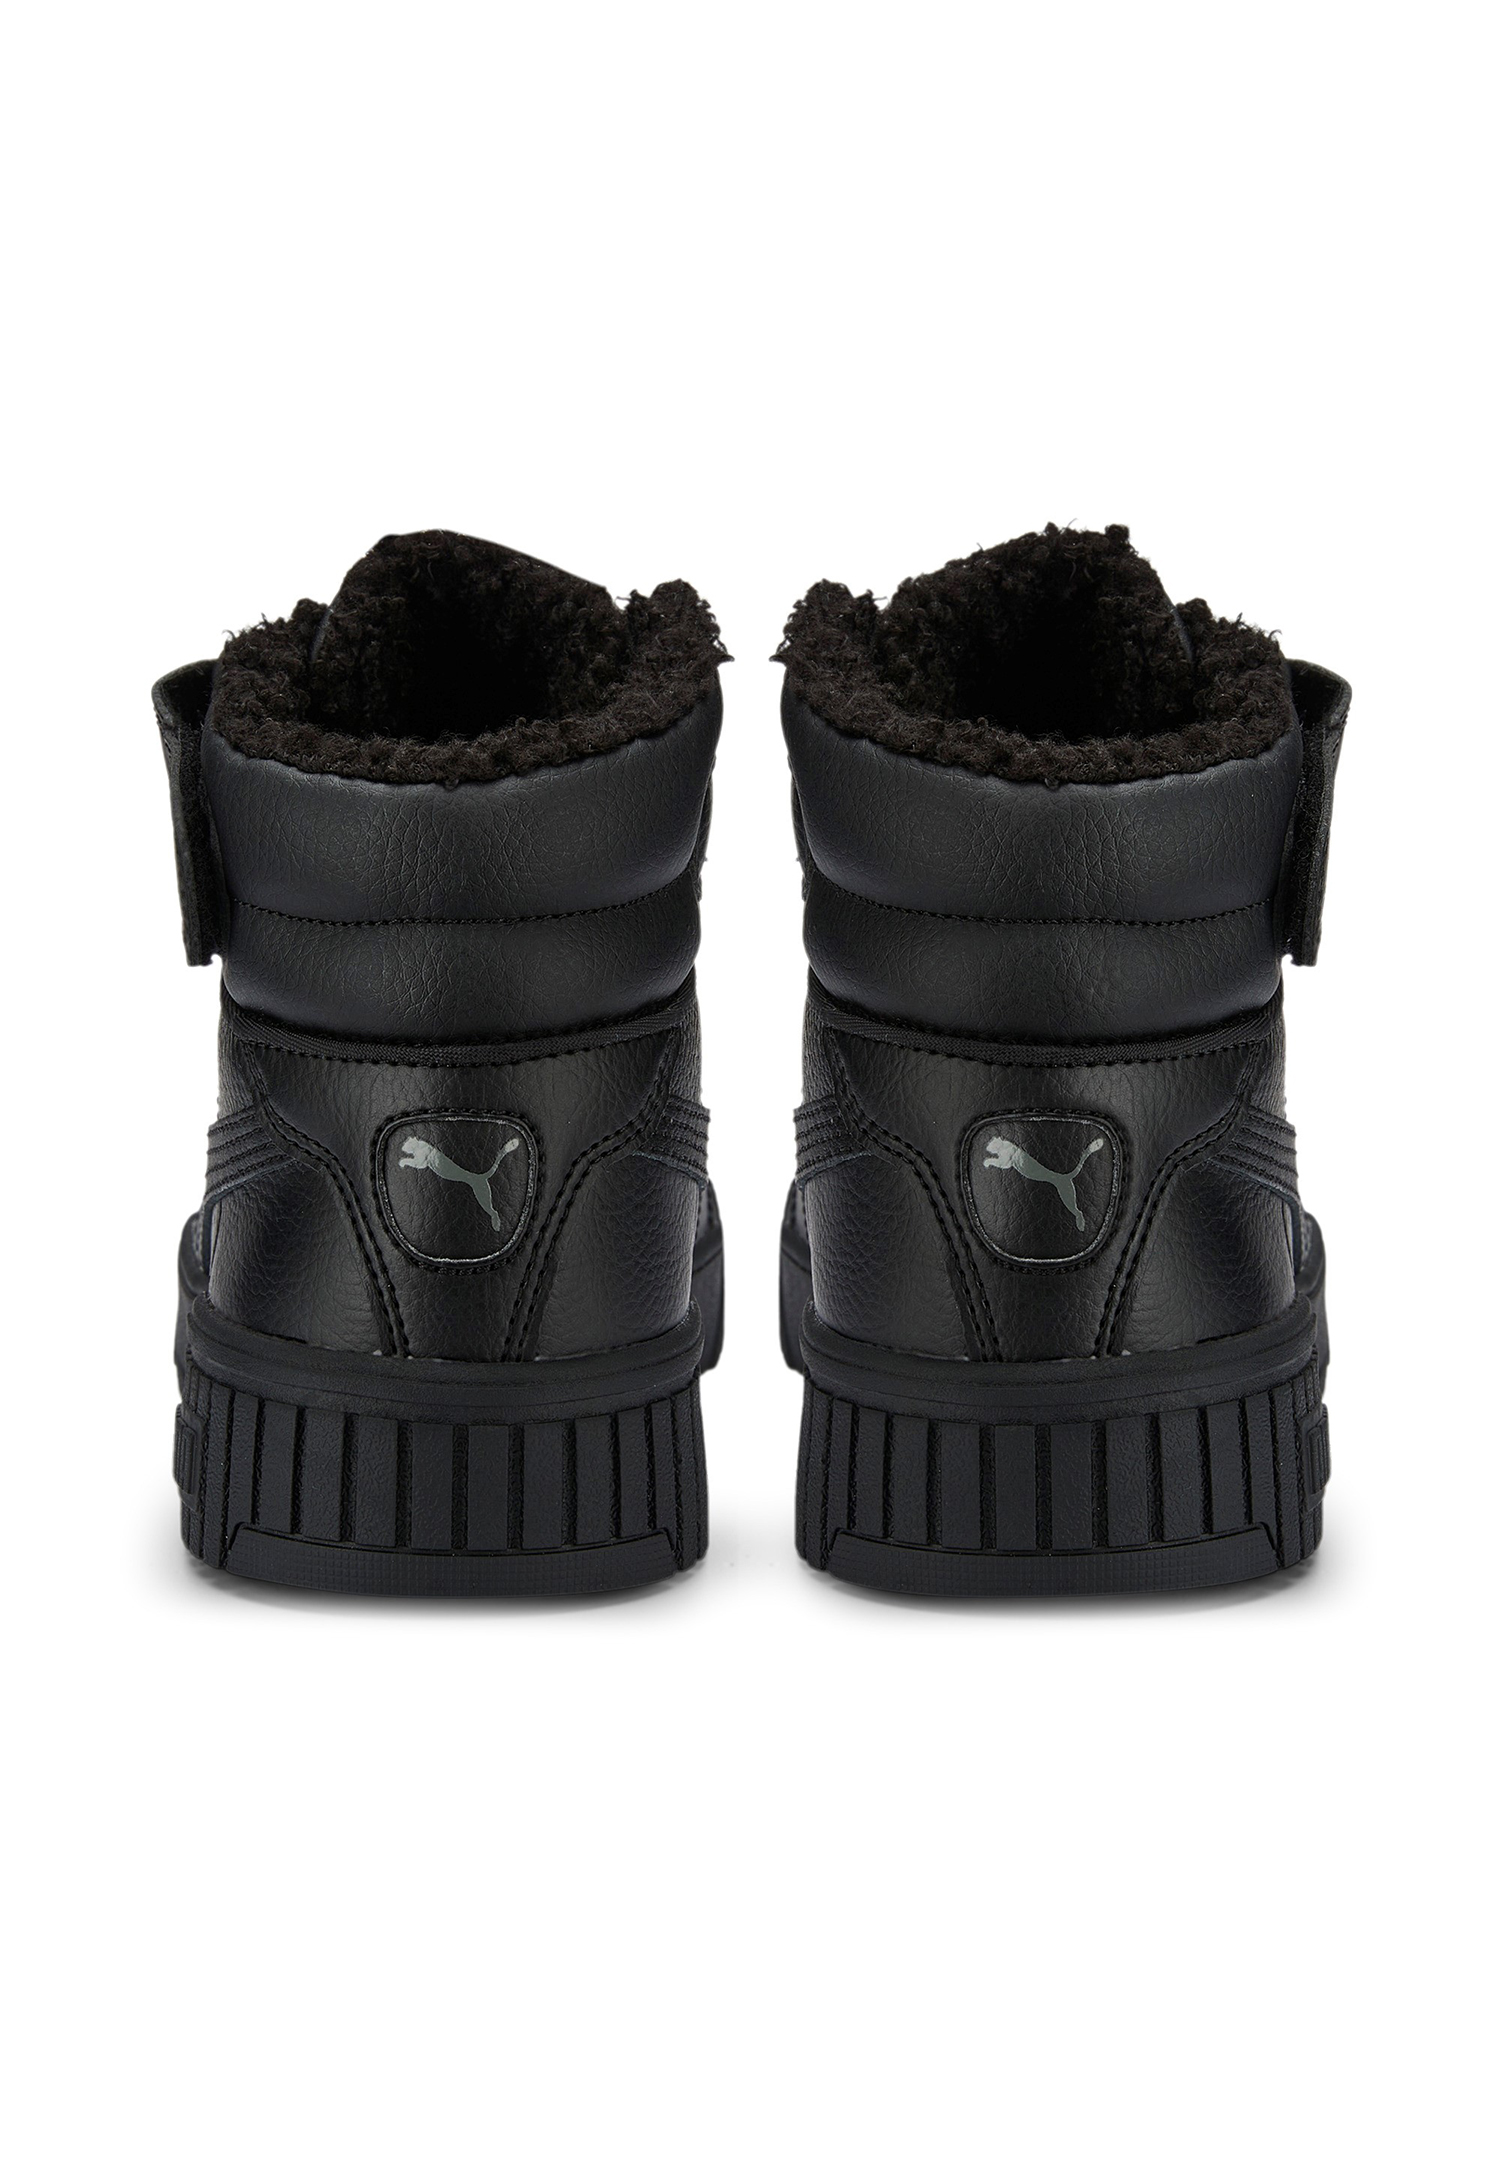 Puma Carina 2.0 Mid WTR Jr Kinder Sneaker Winterschuhe Schuhe gefüttert 387380 schwarz 